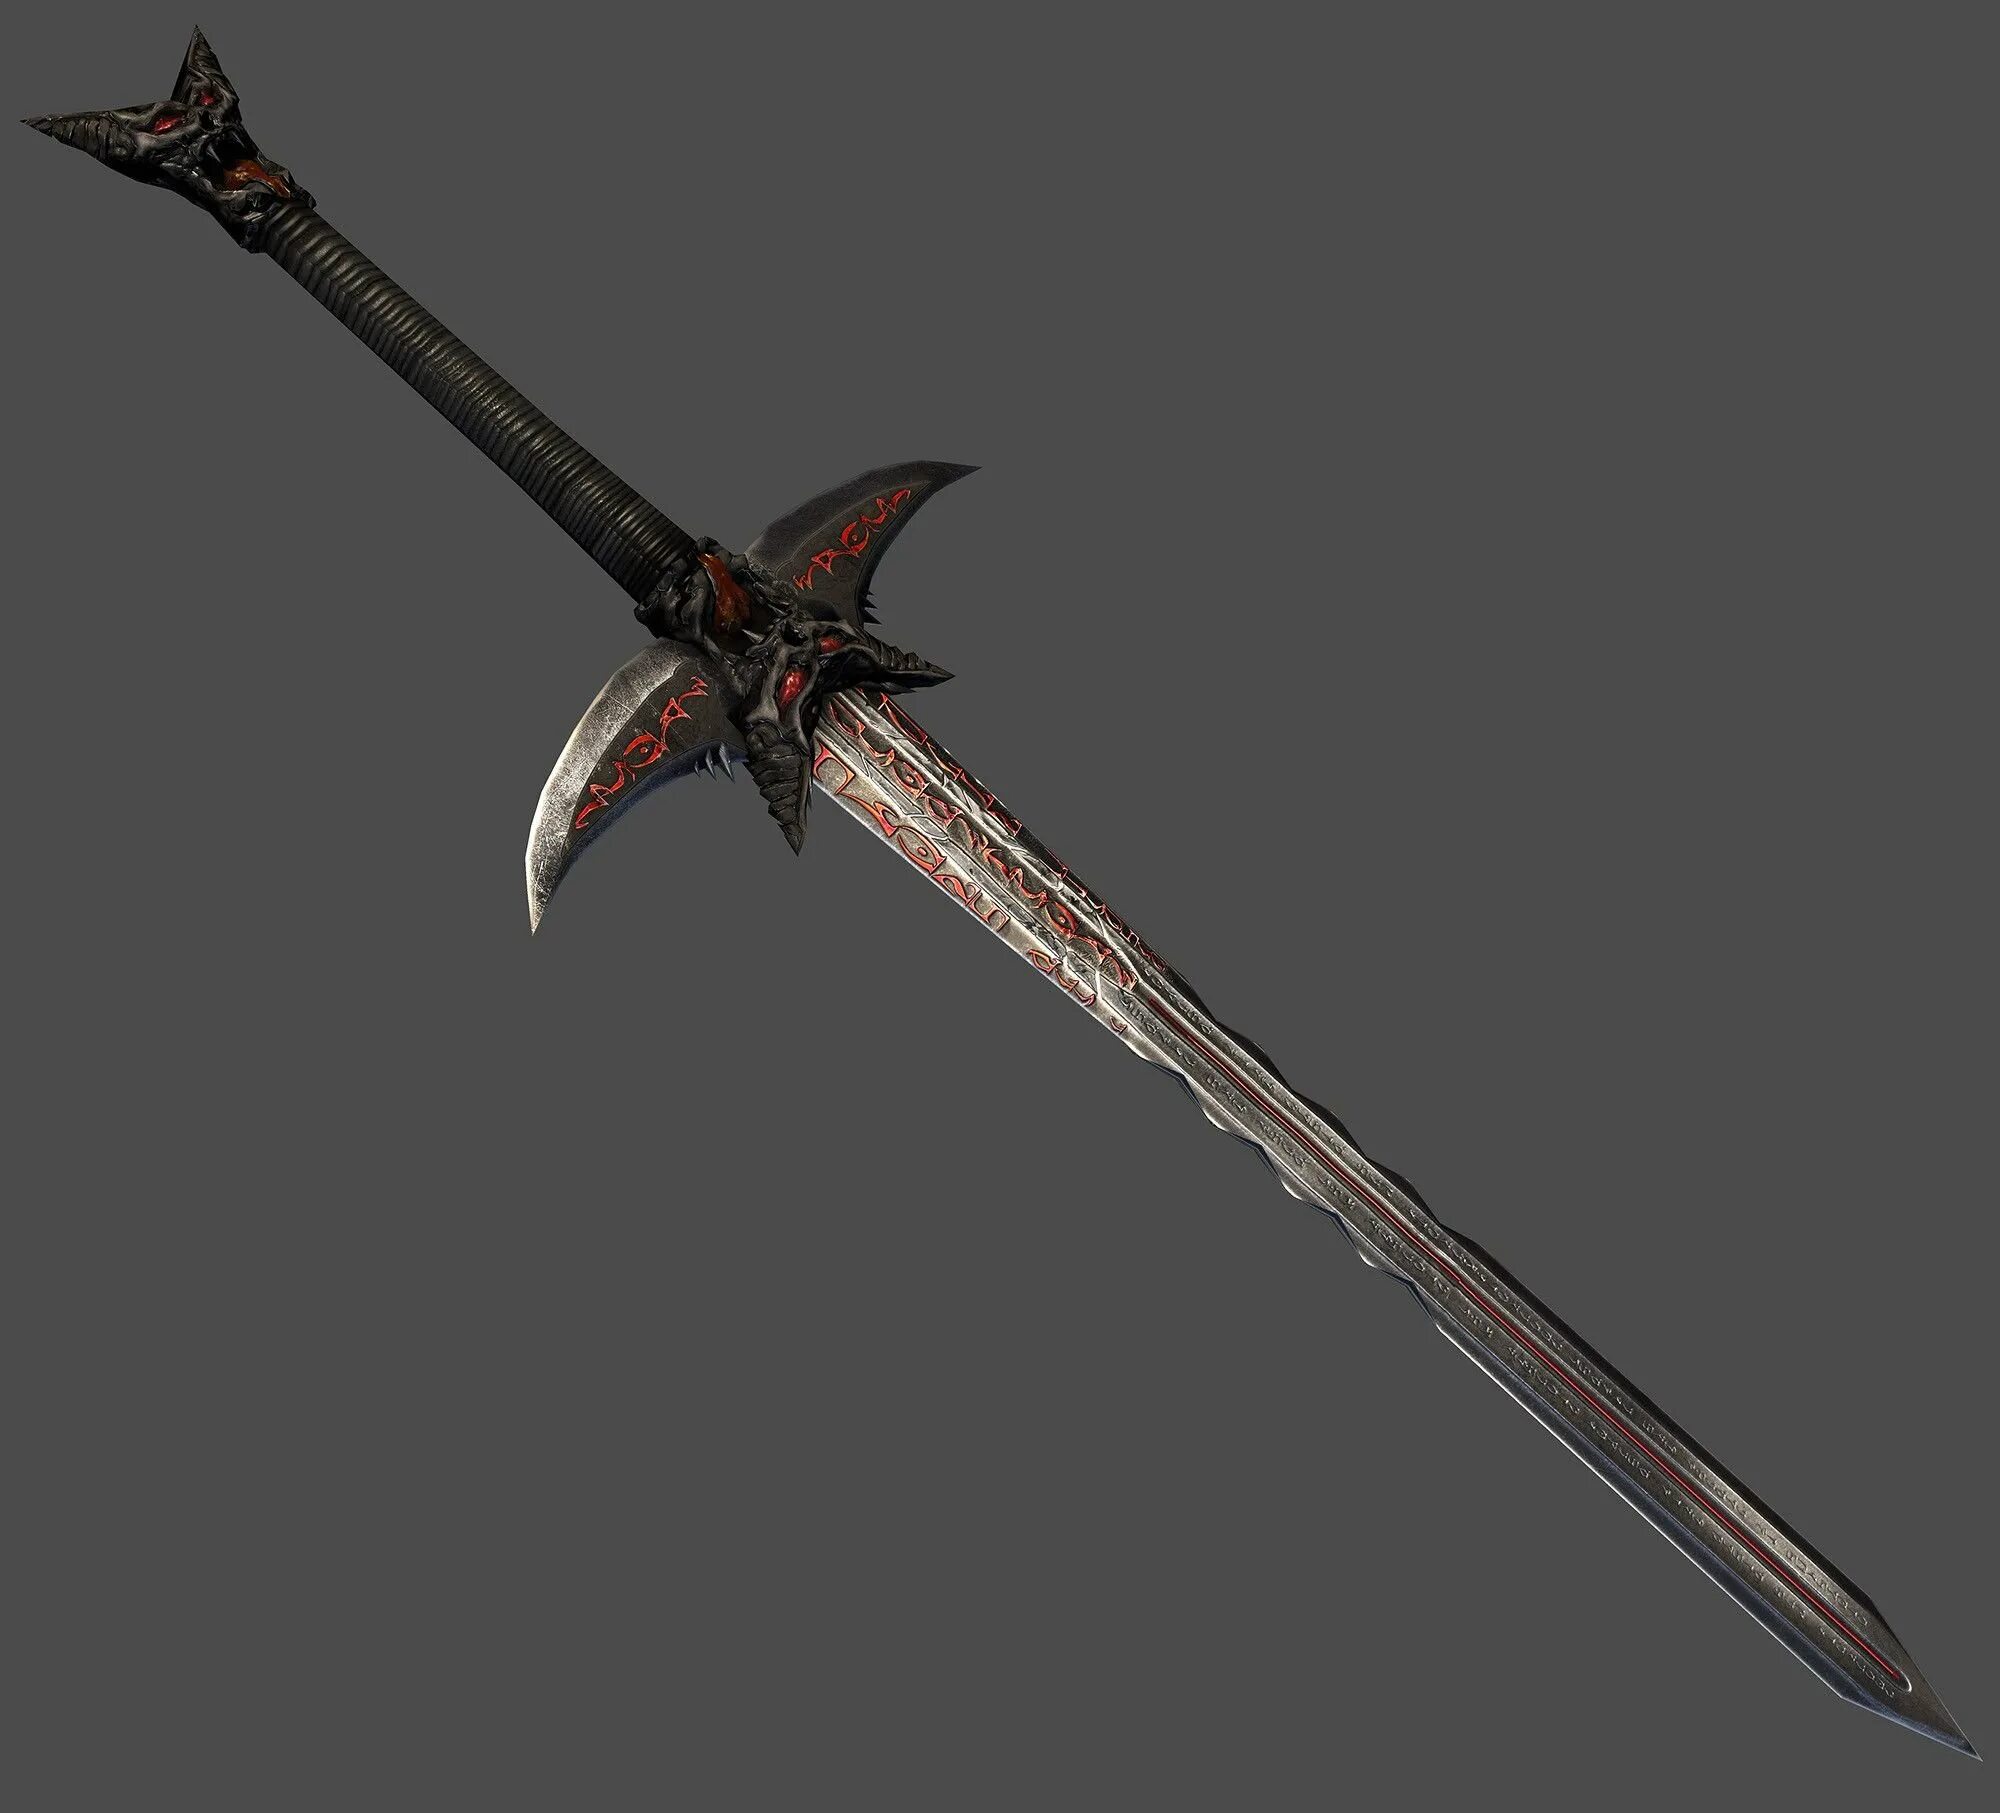 Оружие с длинным клинком. Даэдрический меч ("Daedric Sword"). Даэдрическая катана морровинд. Даэдрический двуручный меч арт. Даэдрический меч морровинд.